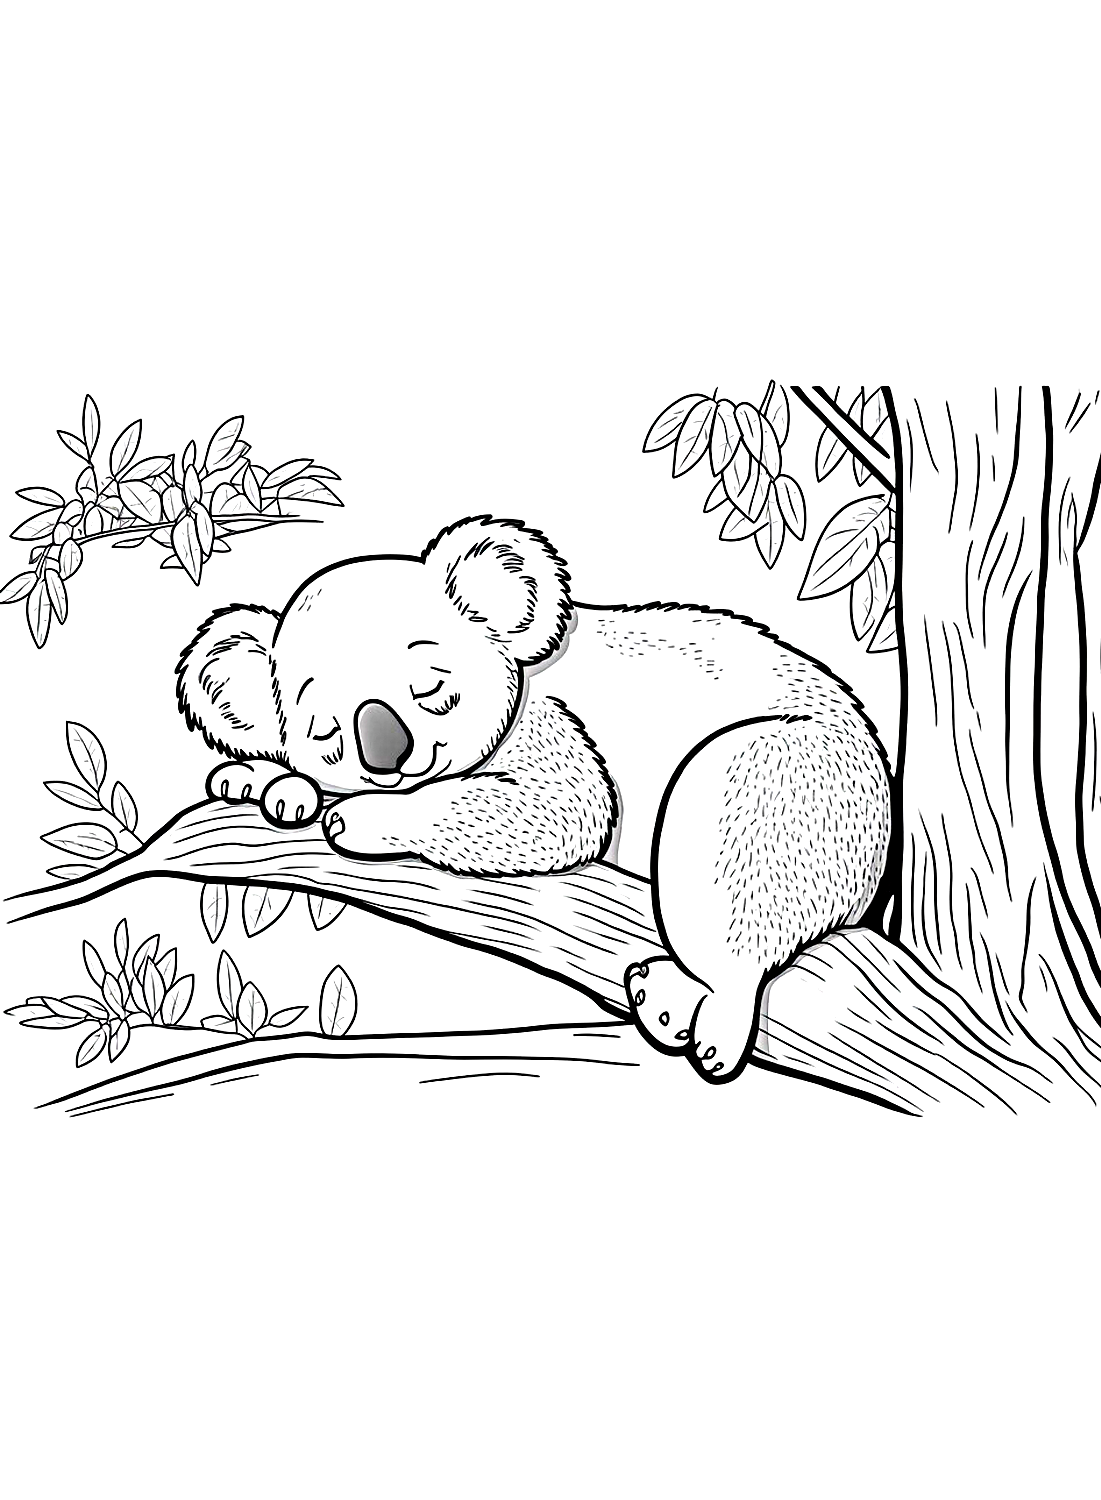 Página en color del Koala durmiente de Koala